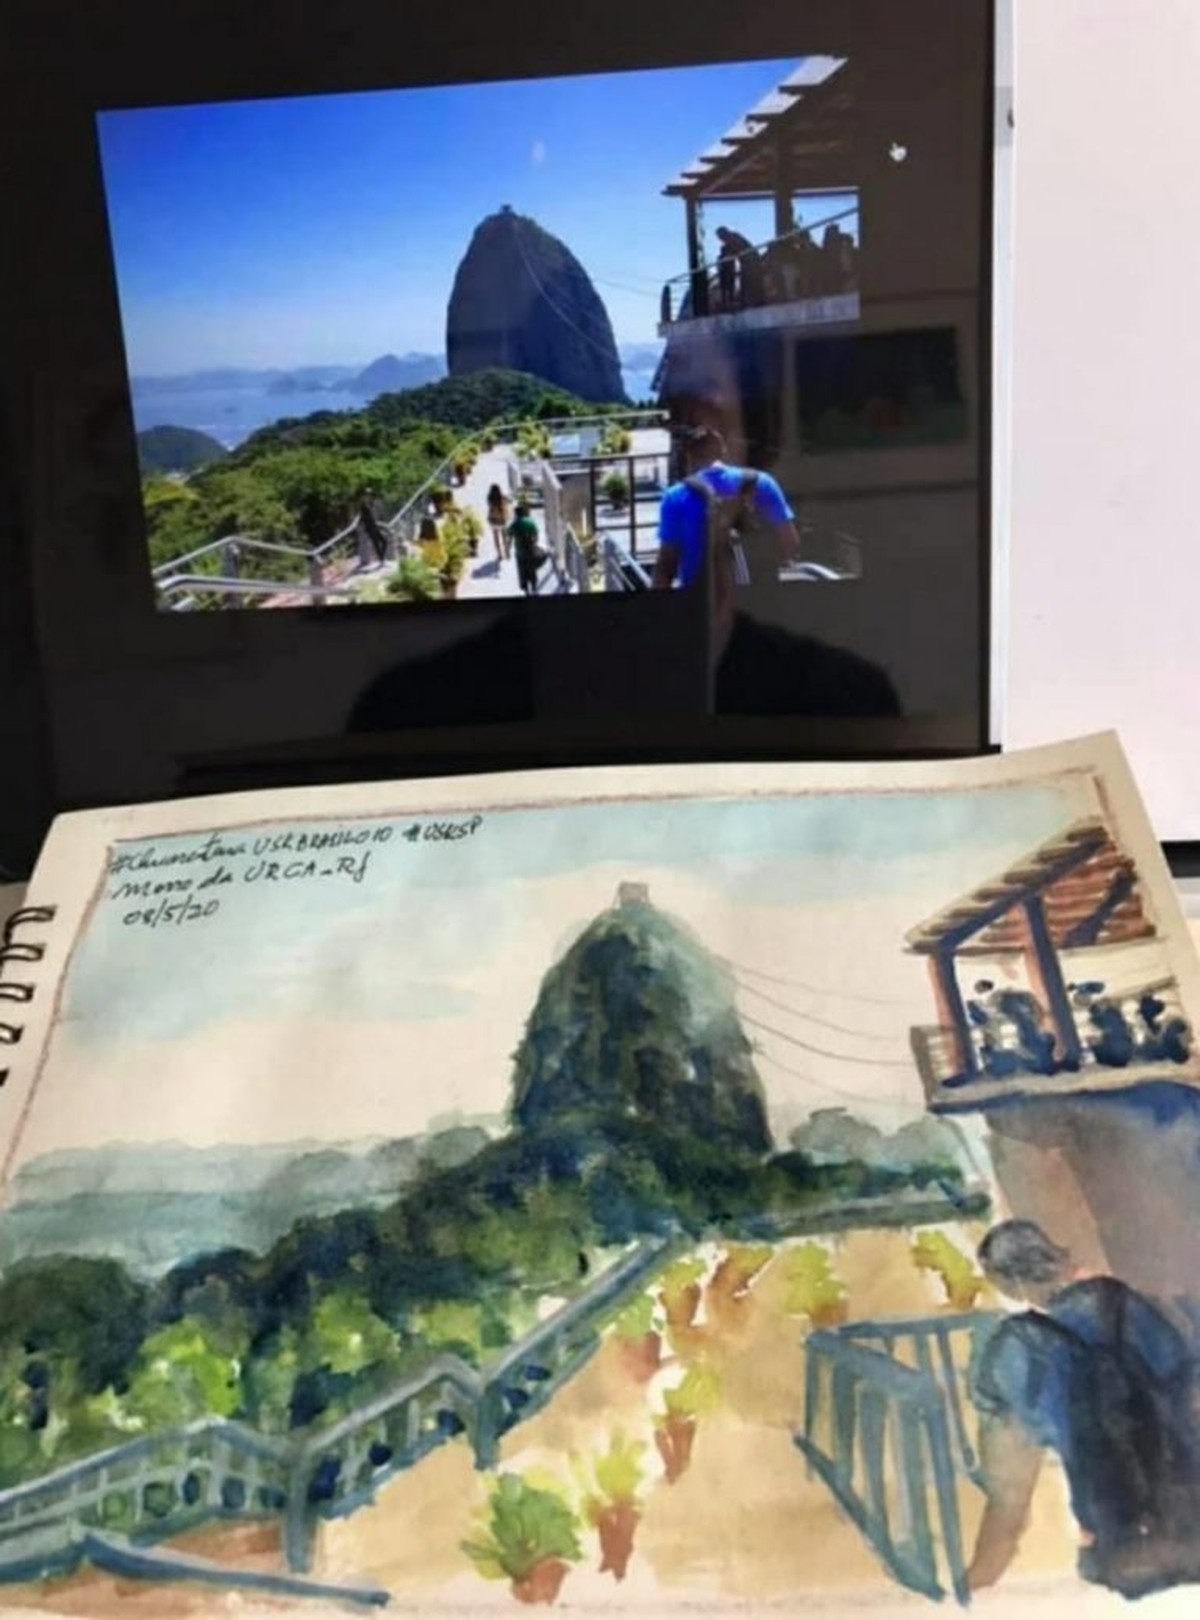 Live' nesta quarta faz 'esquenta' de encontro de desenhistas paralelo ao  Rio Capital Mundial da Arquitetura, Rio de Janeiro